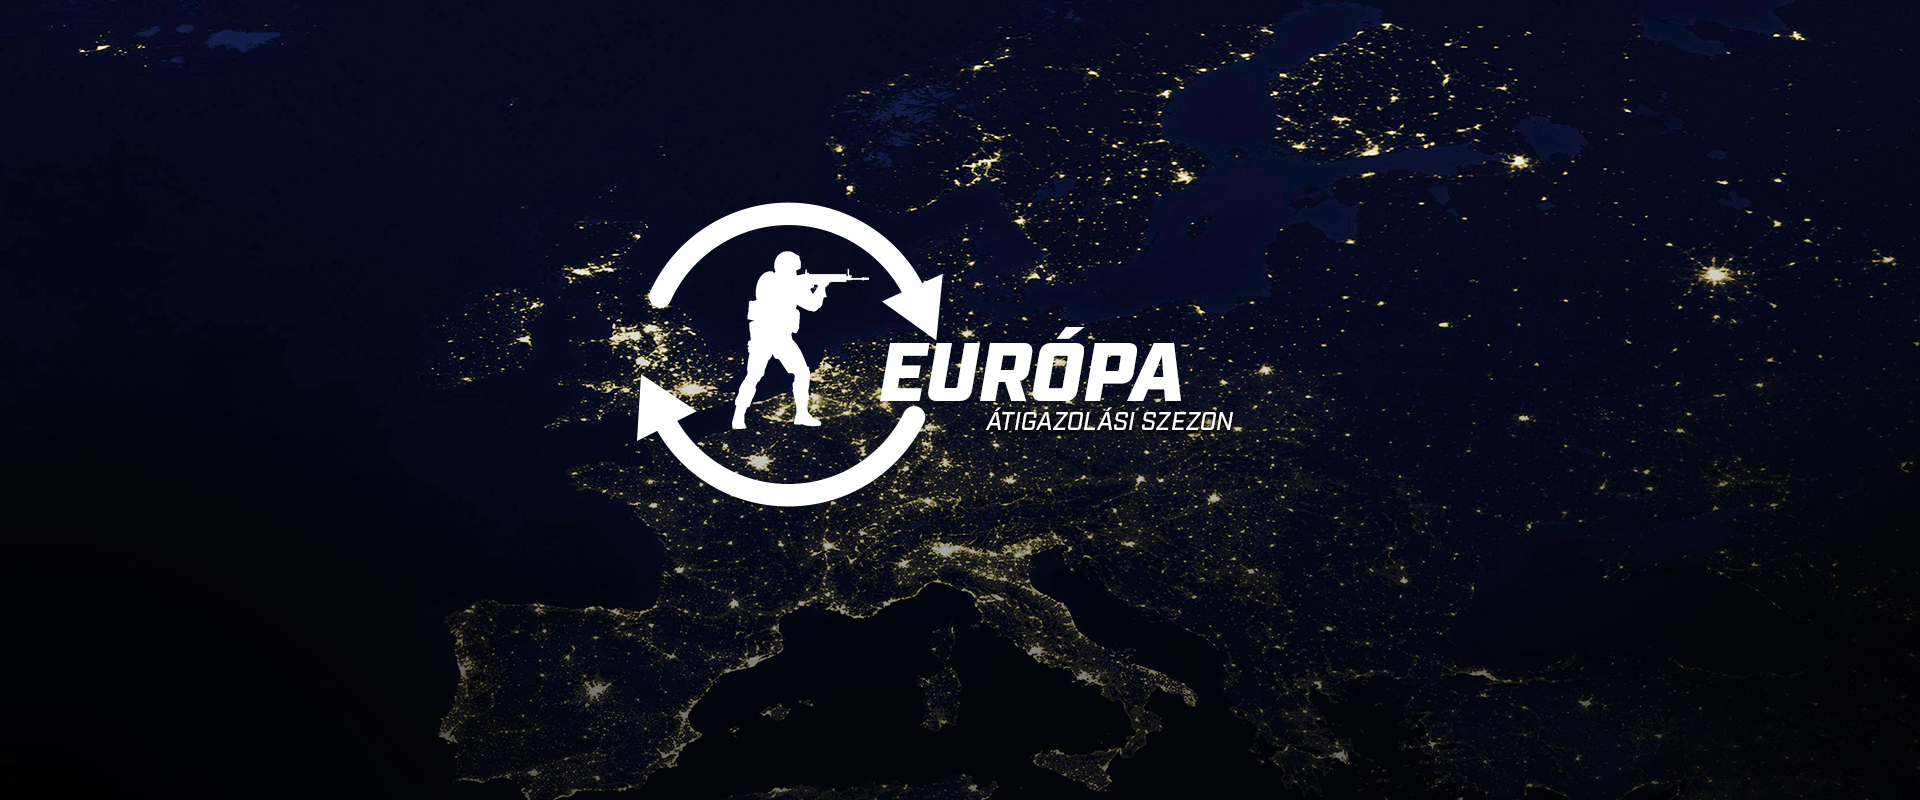 Átrajzolták Európa térképét az átigazolási szezonban